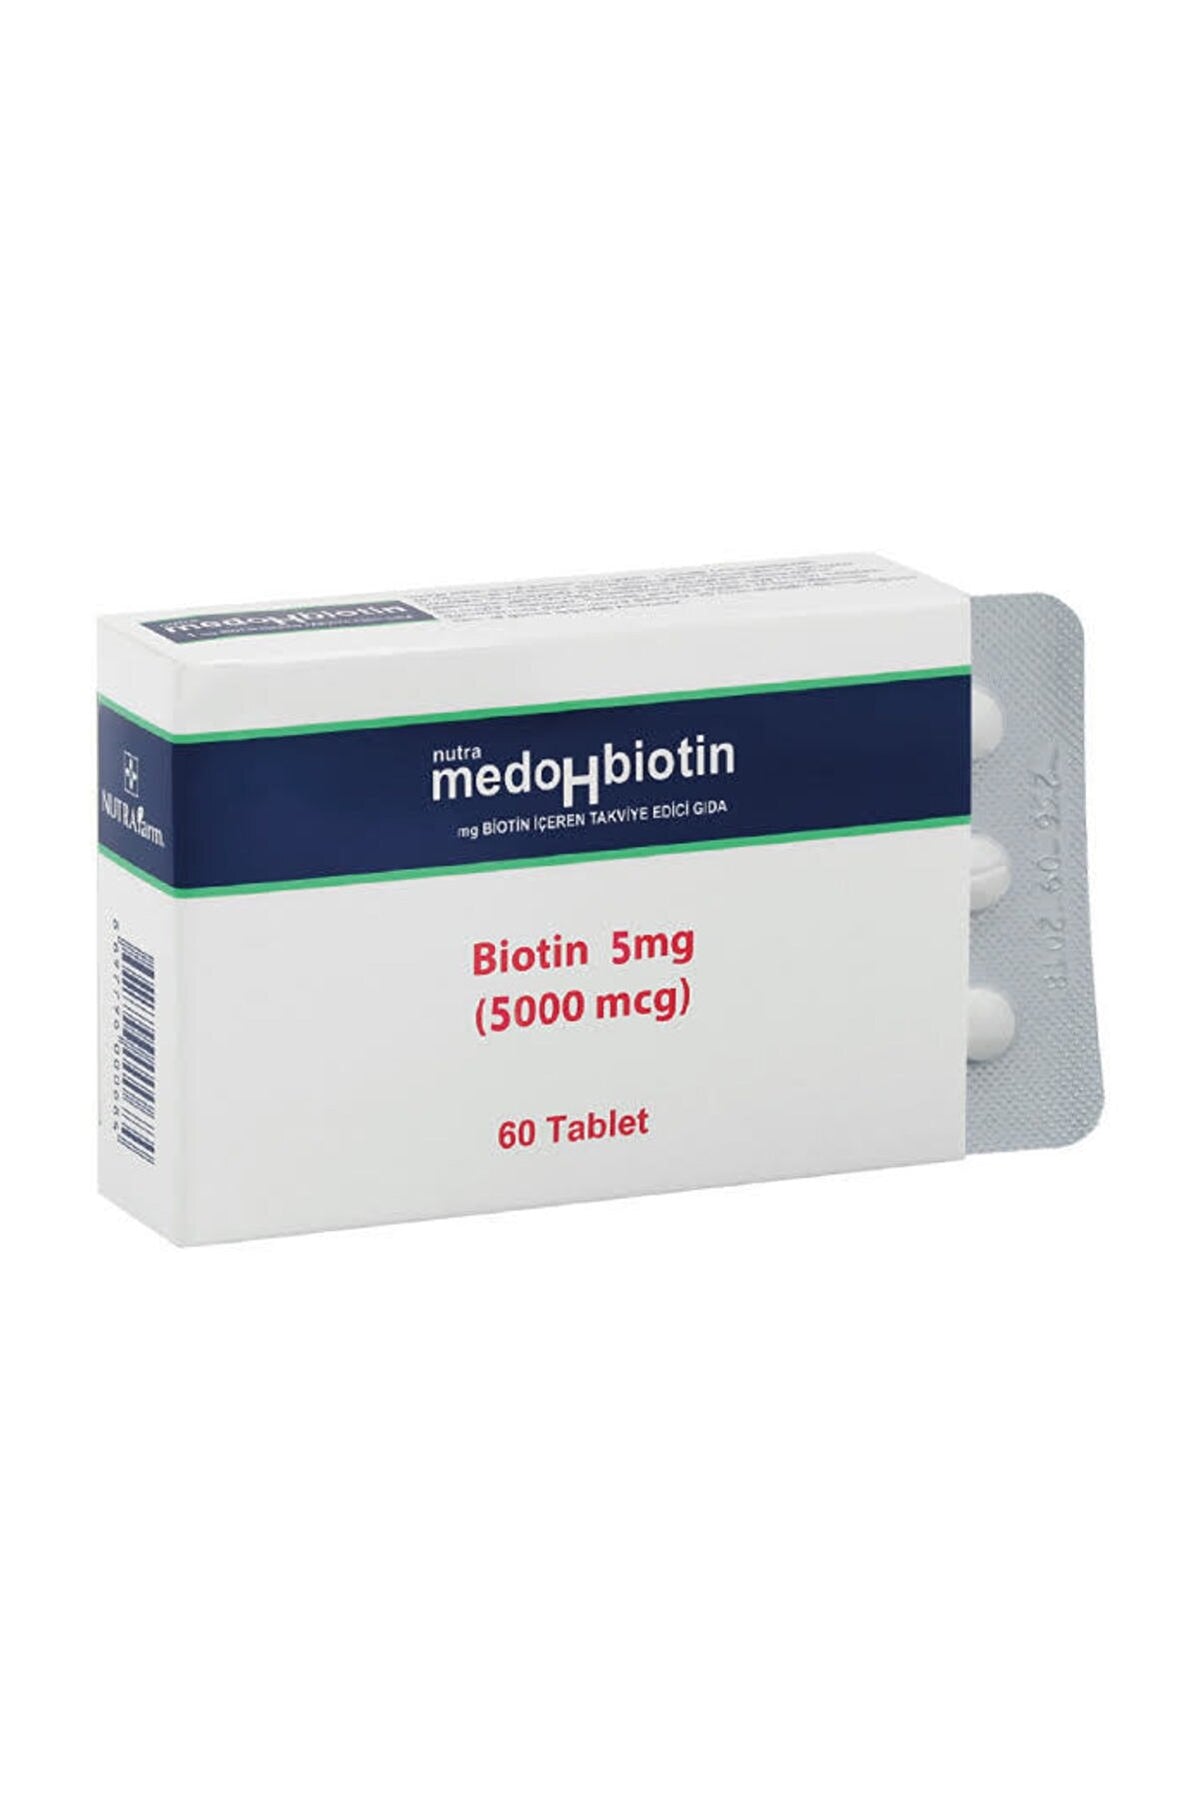 Medohbiotin 5 mg 60 Tablet